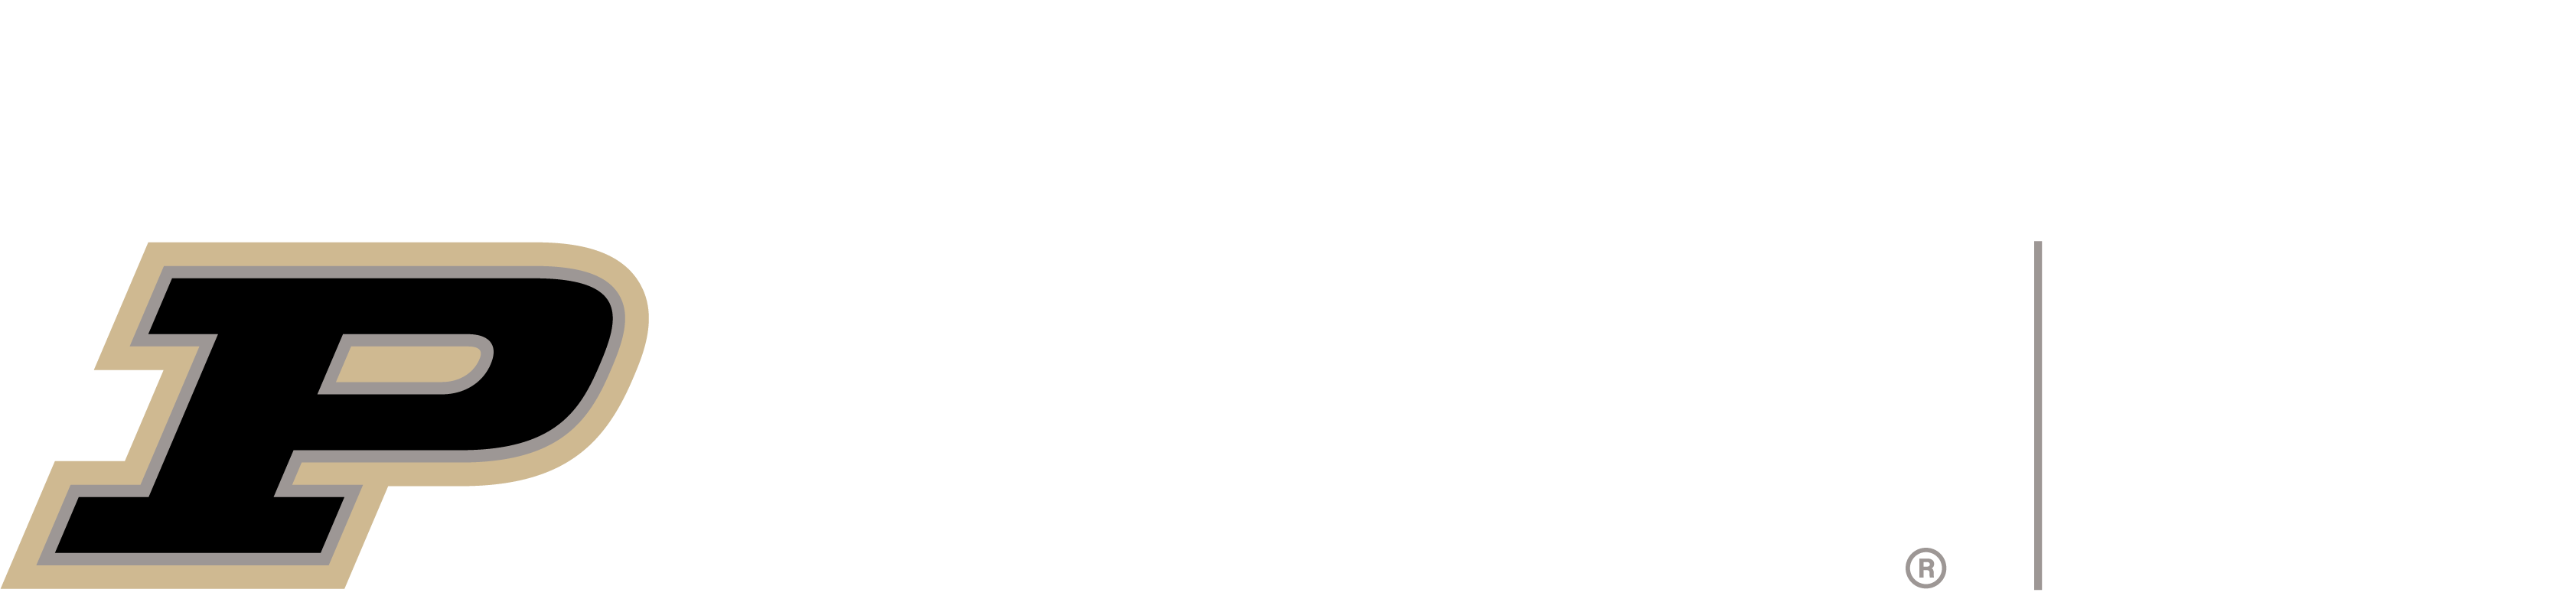 Purdue University Extension - Community Development